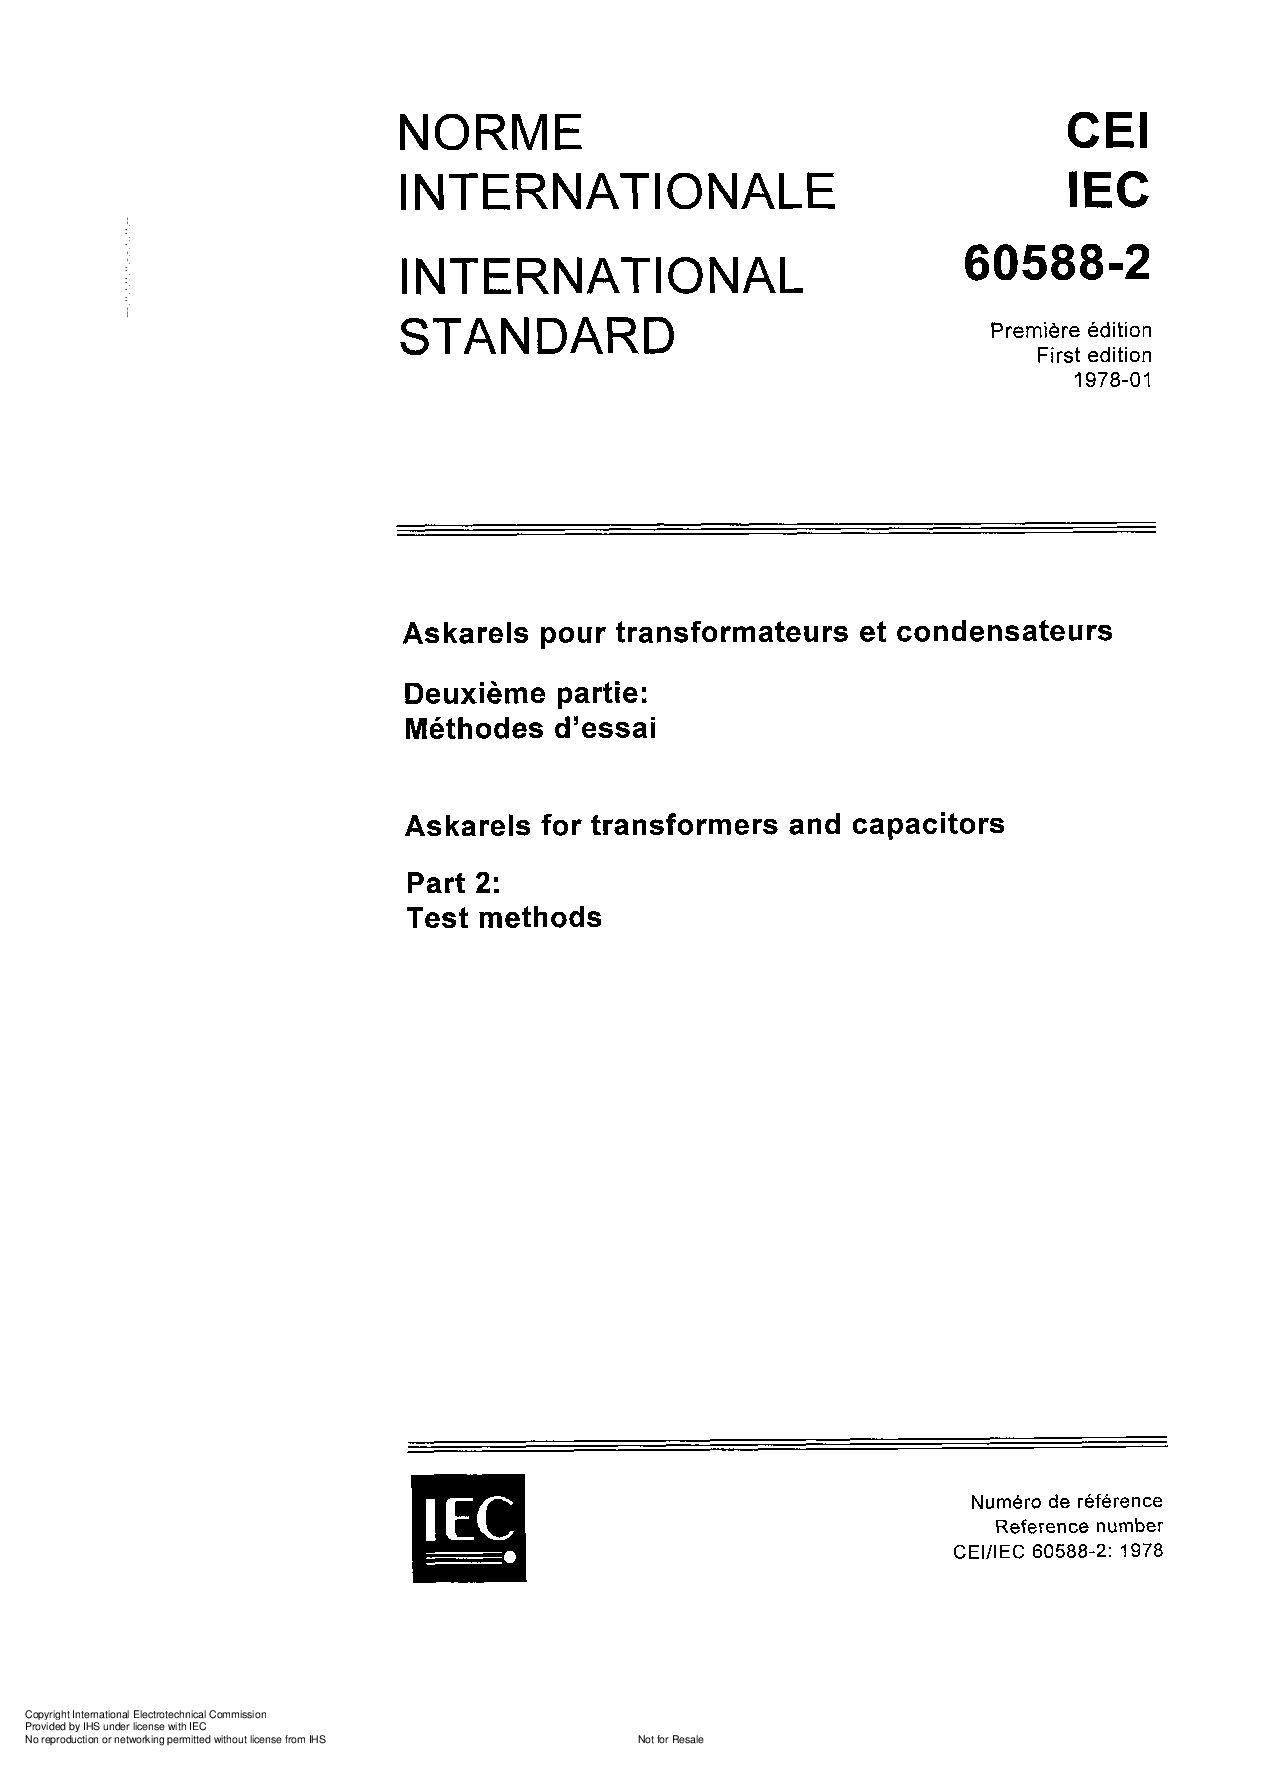 IEC 60588-2:1978